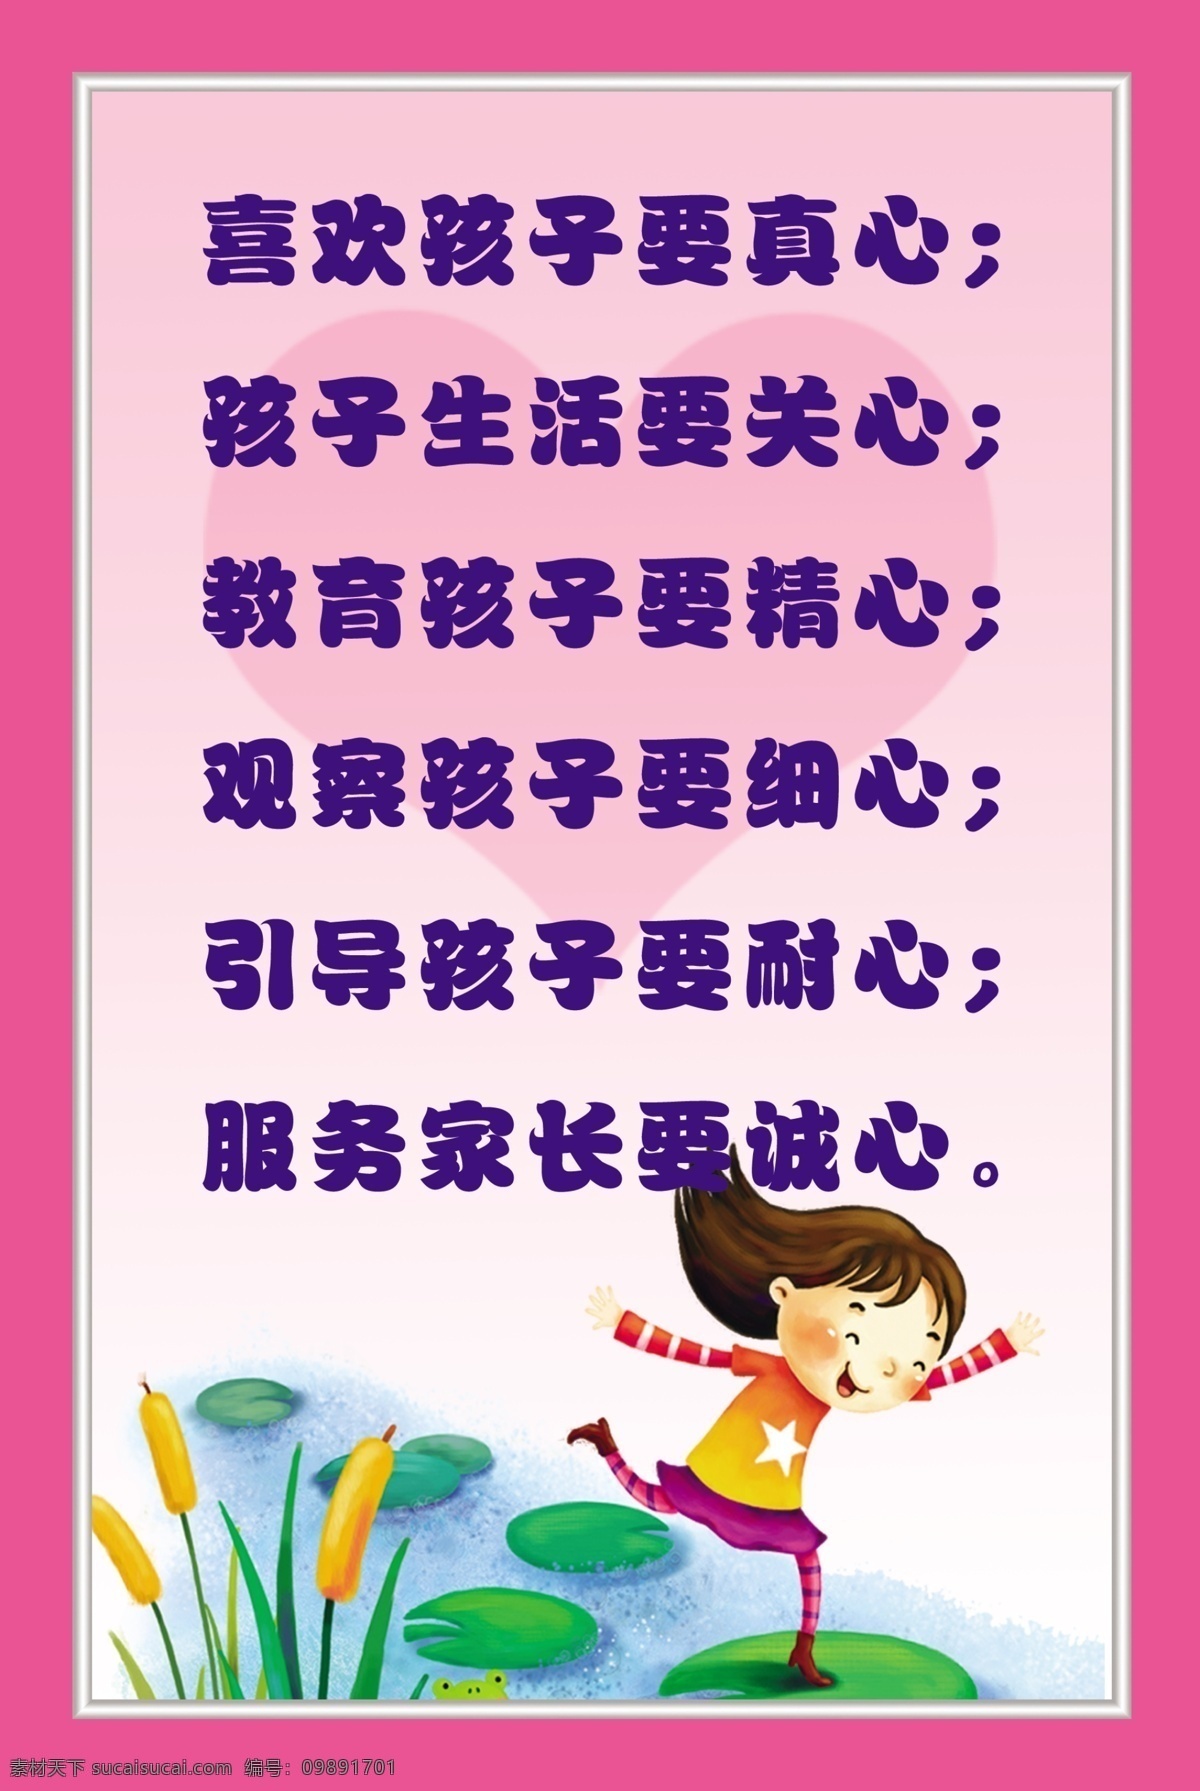 幼儿园标语 标语 幼儿园 制度 版面 宣传栏 孩子 爱心 彩色制度 儿童 儿童版面 幼教园 广告设计模板 源文件